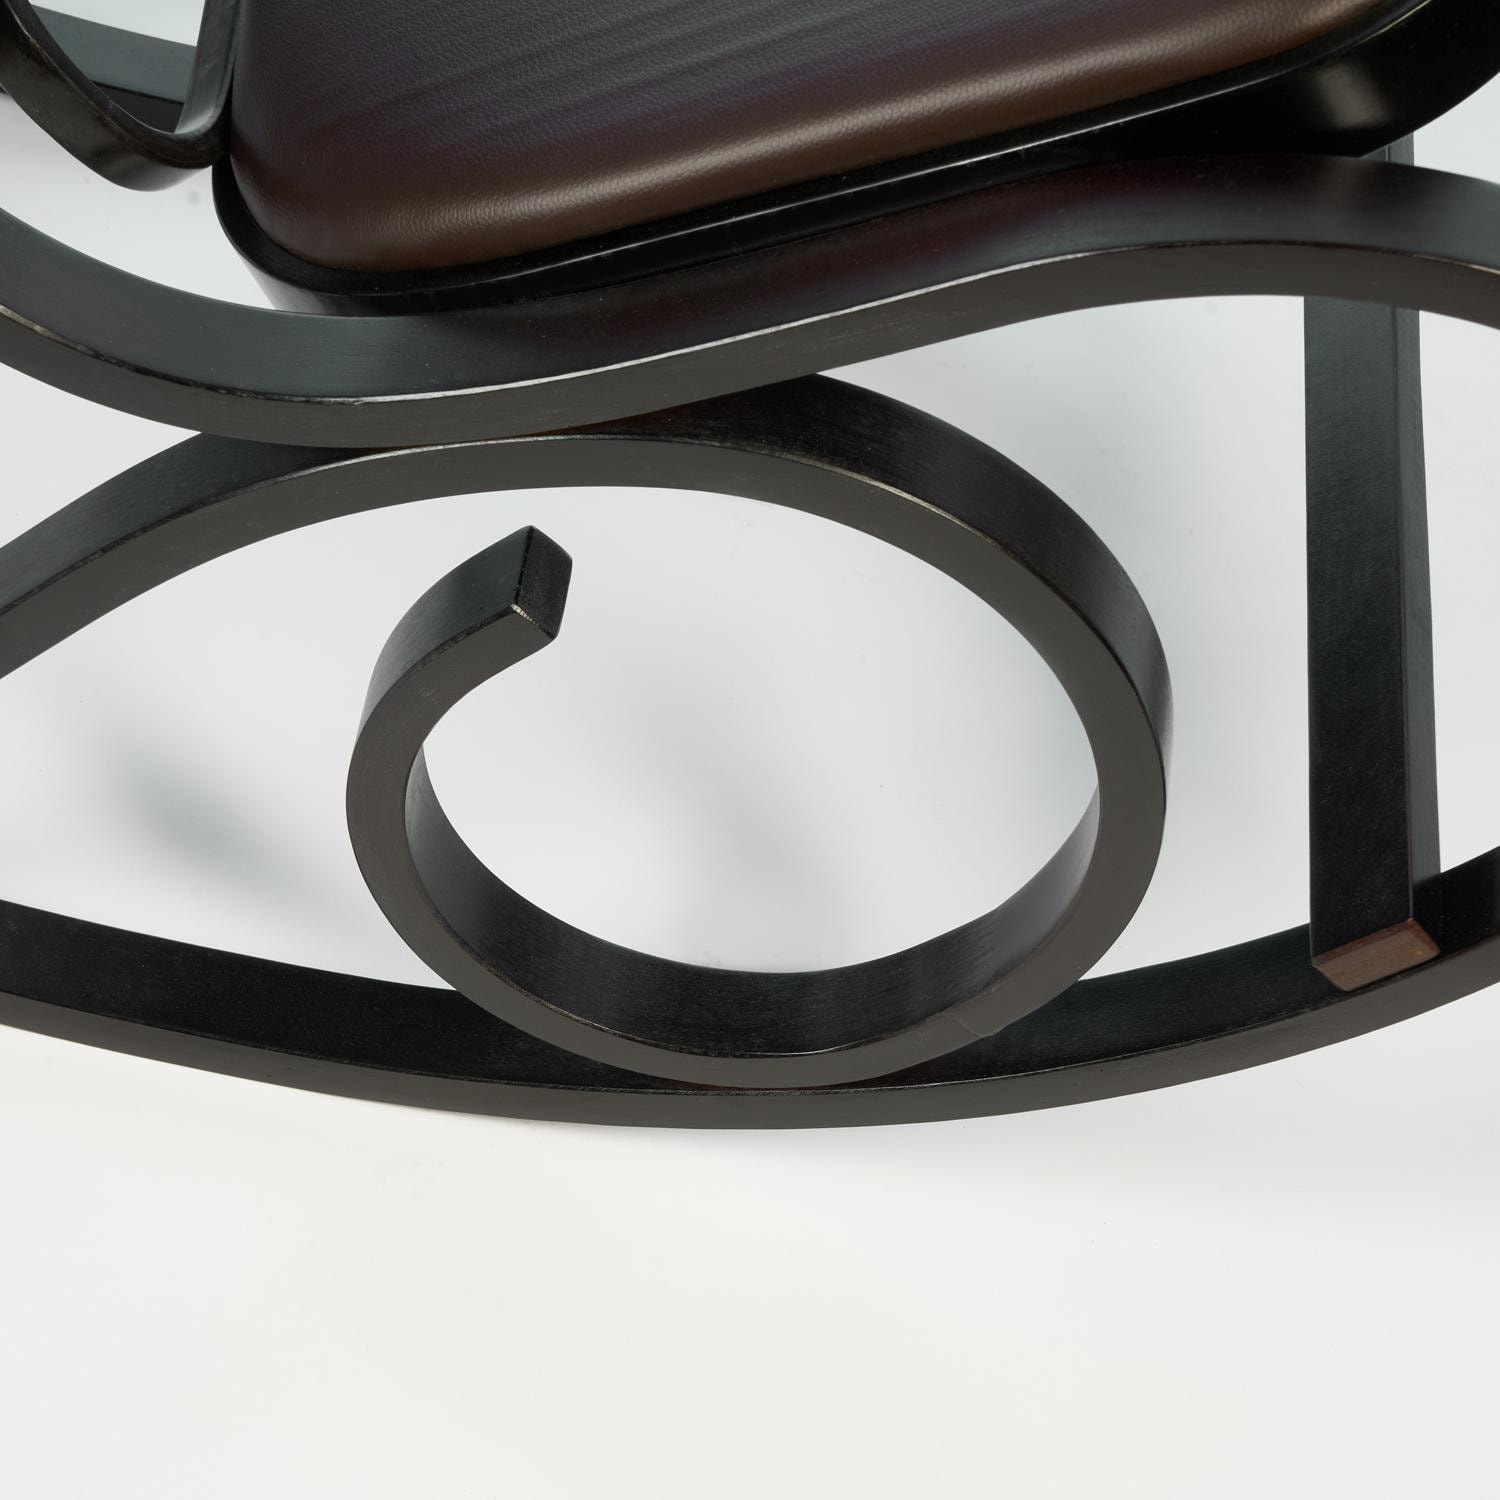 Кресло-качалка mod. AX3002-2 венге #9, экокожа темно-коричневая